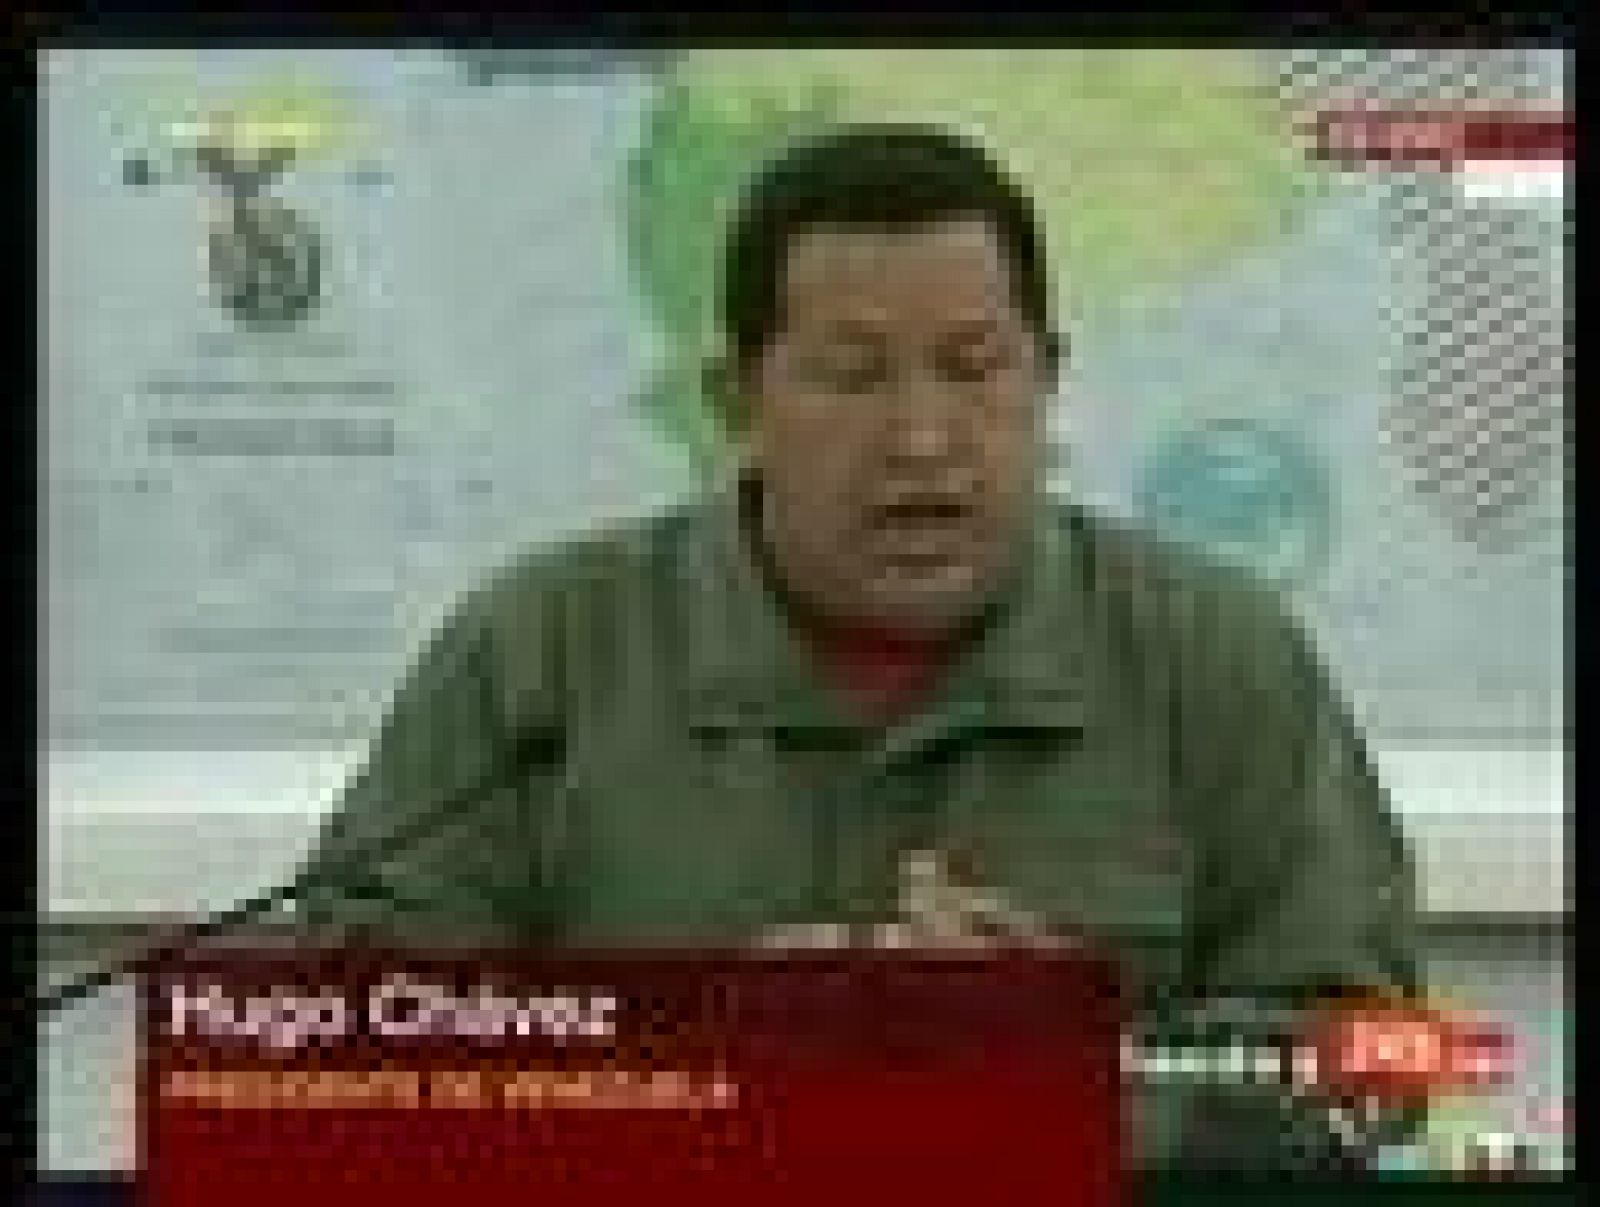  La medida se toma para "darle más fuerza" al sistema bancario público nacional, según Hugo Chavez.